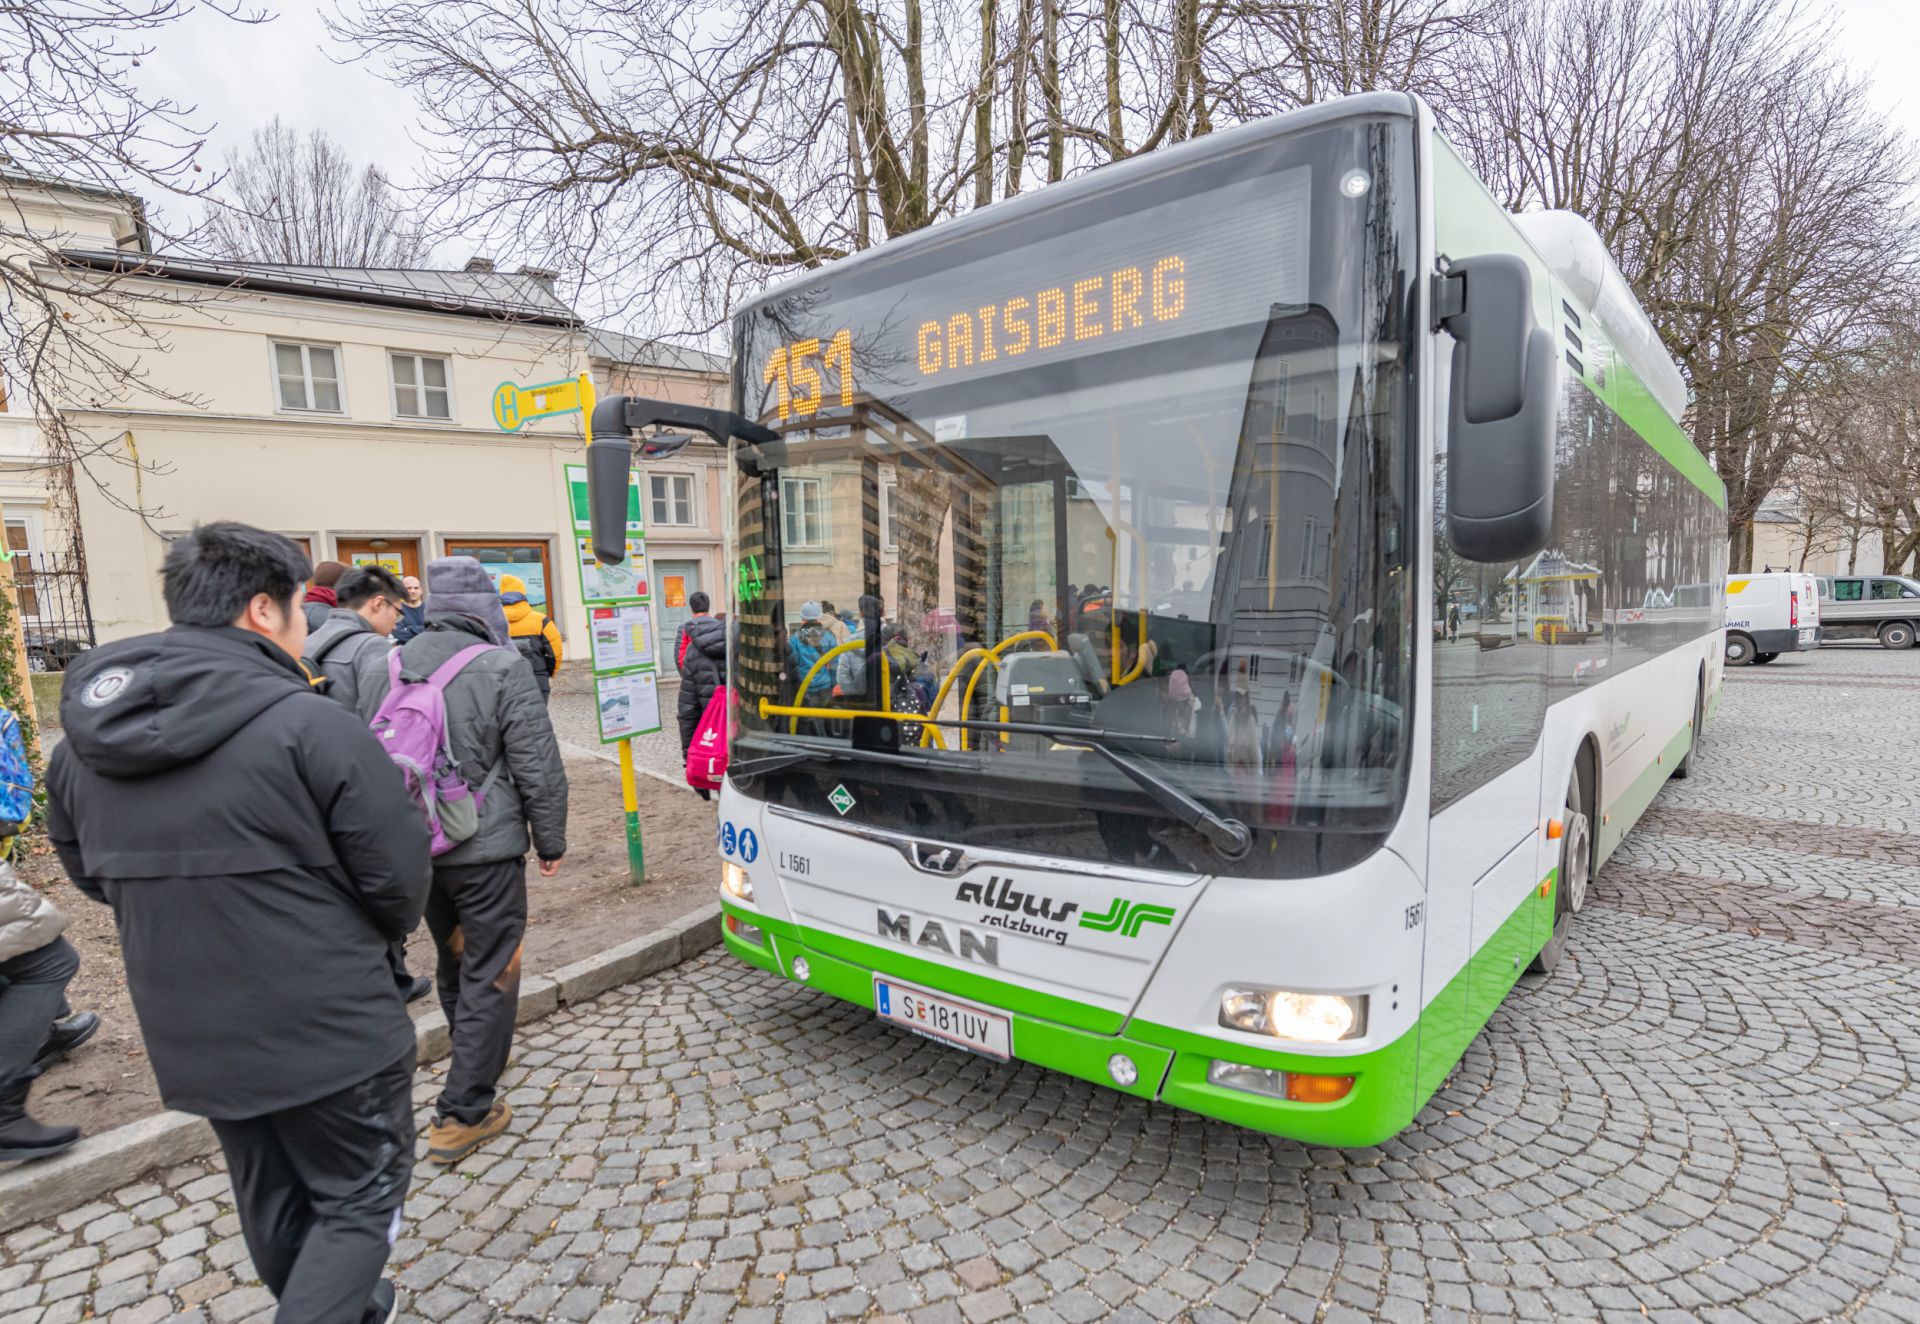 Attraktivierung Gaisbergbus L151 